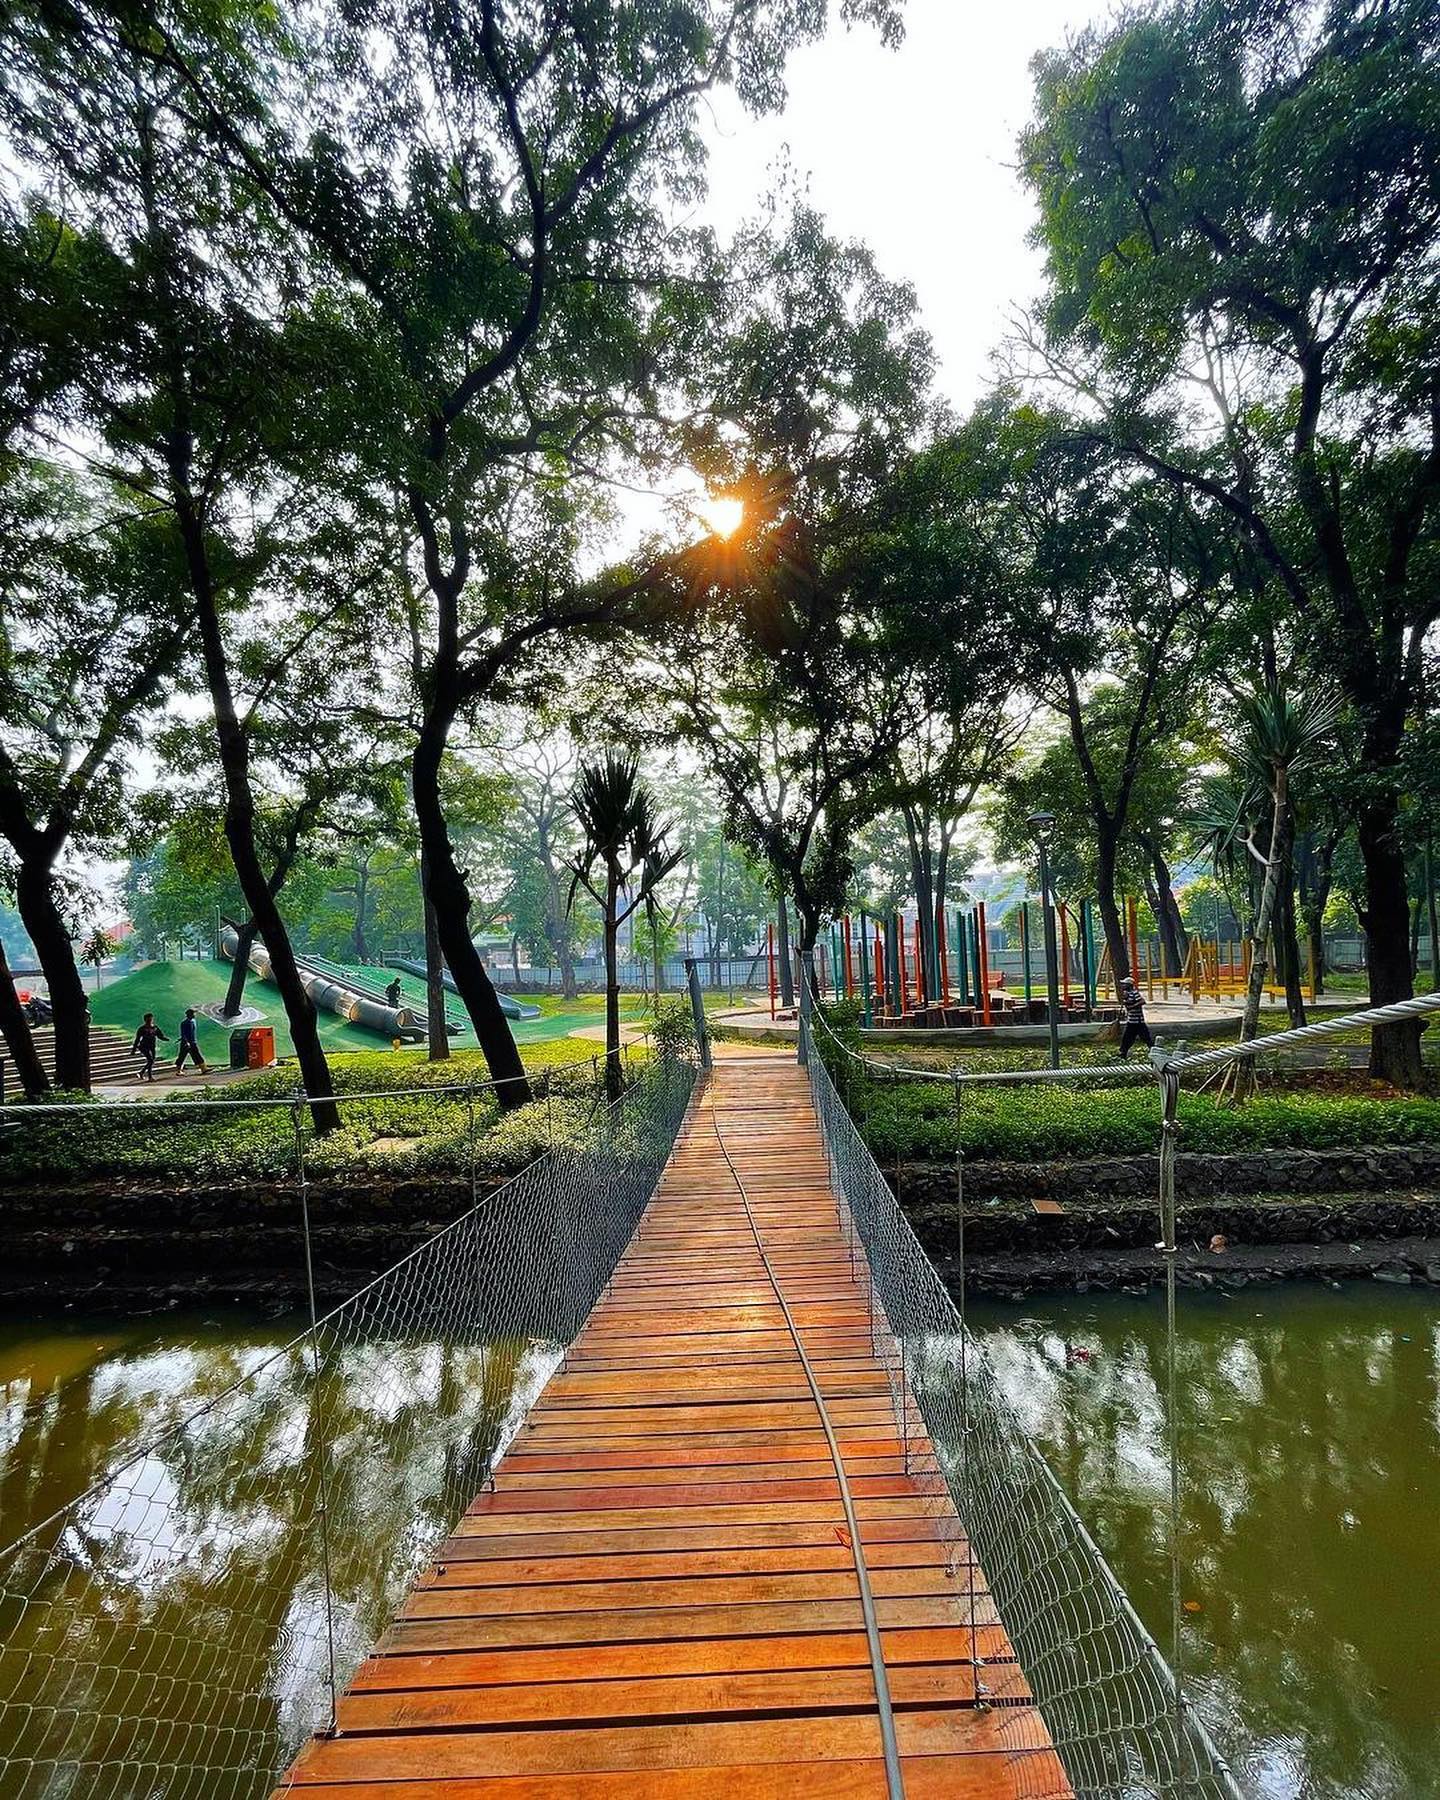 Kali Di Tebet Eco Park Jakarta Image From @ngabilajepret2